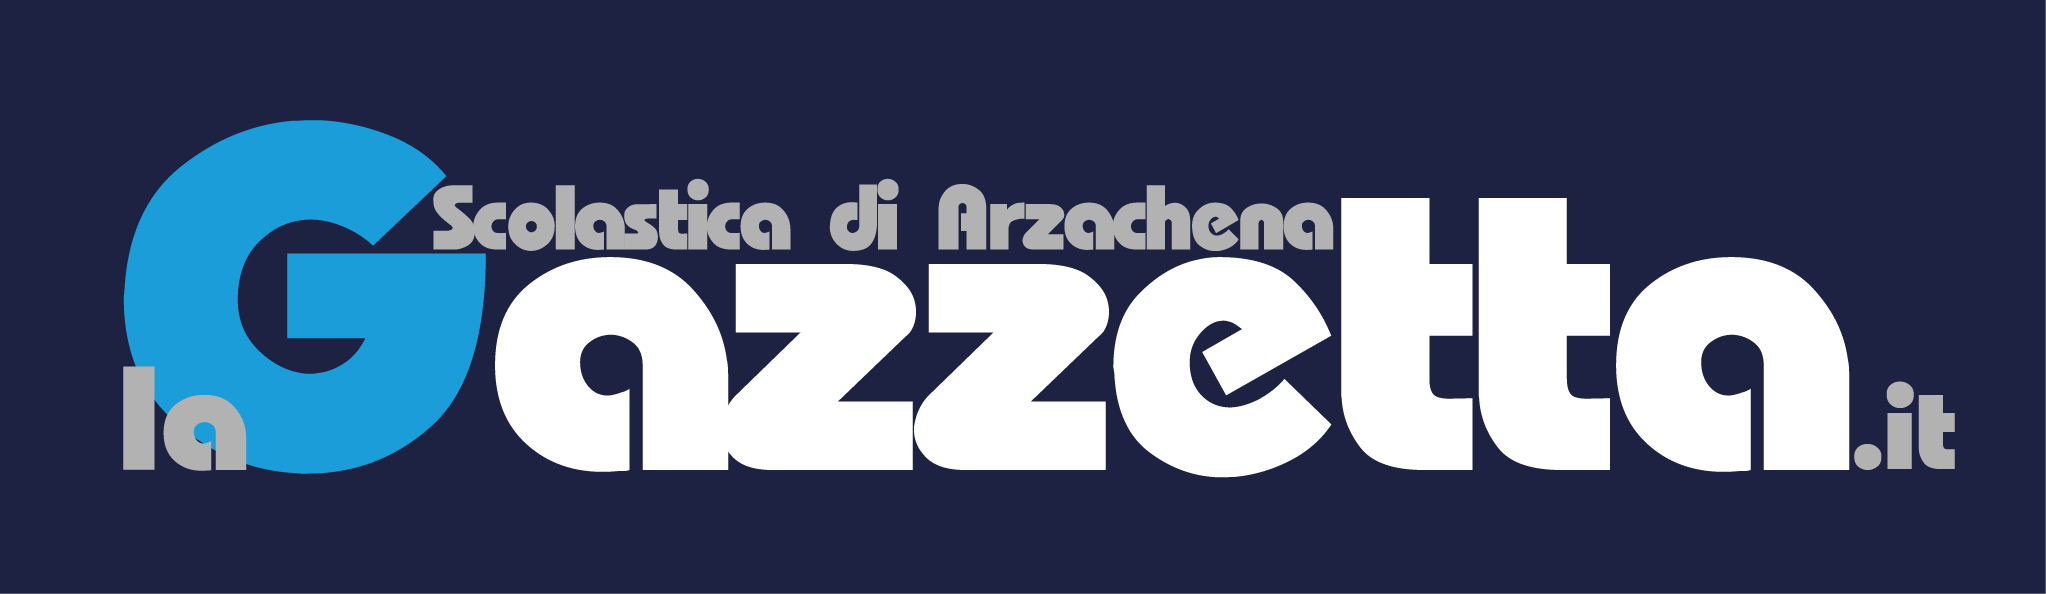 La Gazzetta Scolastica di Arzachena